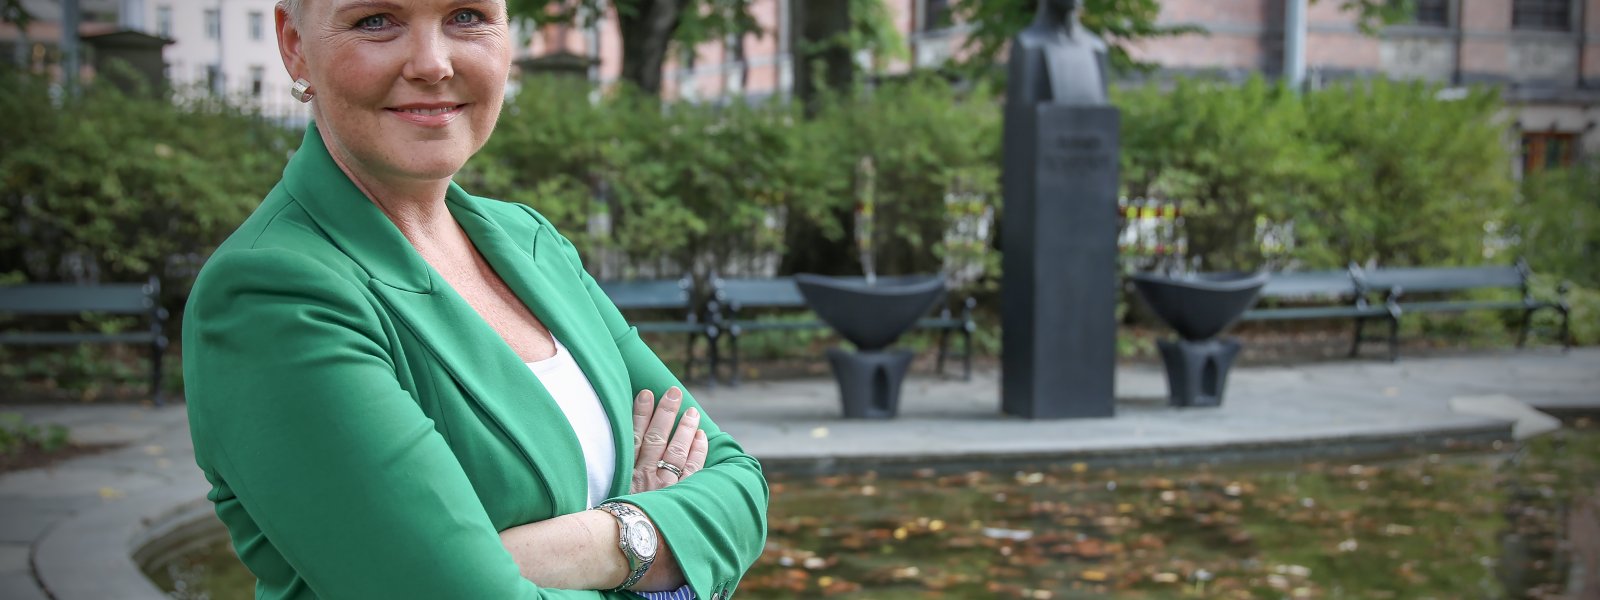 Anne Beathe Tvinnereim er nestleder i Senterpartiet og fylkesråd for plan, klima og miljø i Viken fylkeskommune